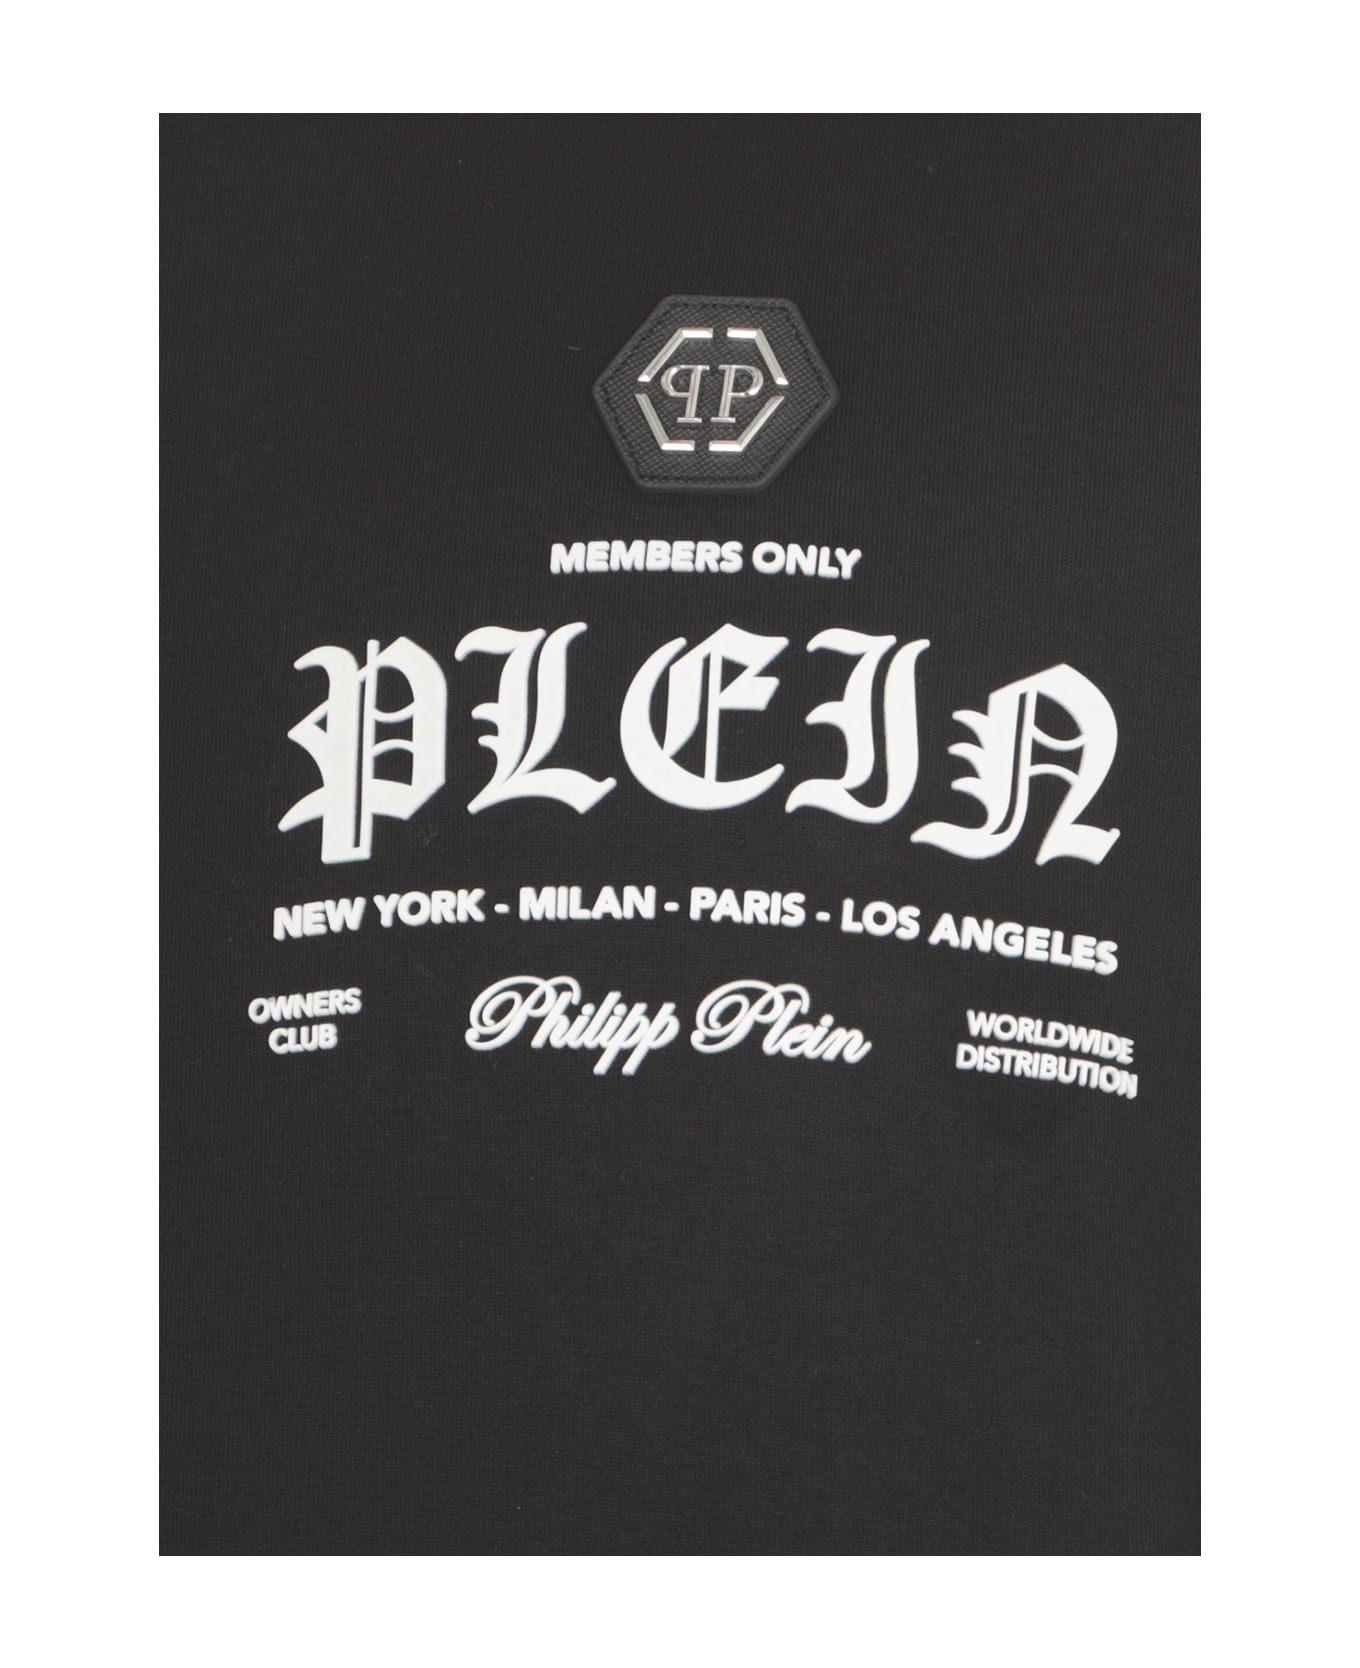 Philipp Plein Round Neck Ss T-shirt - Black シャツ